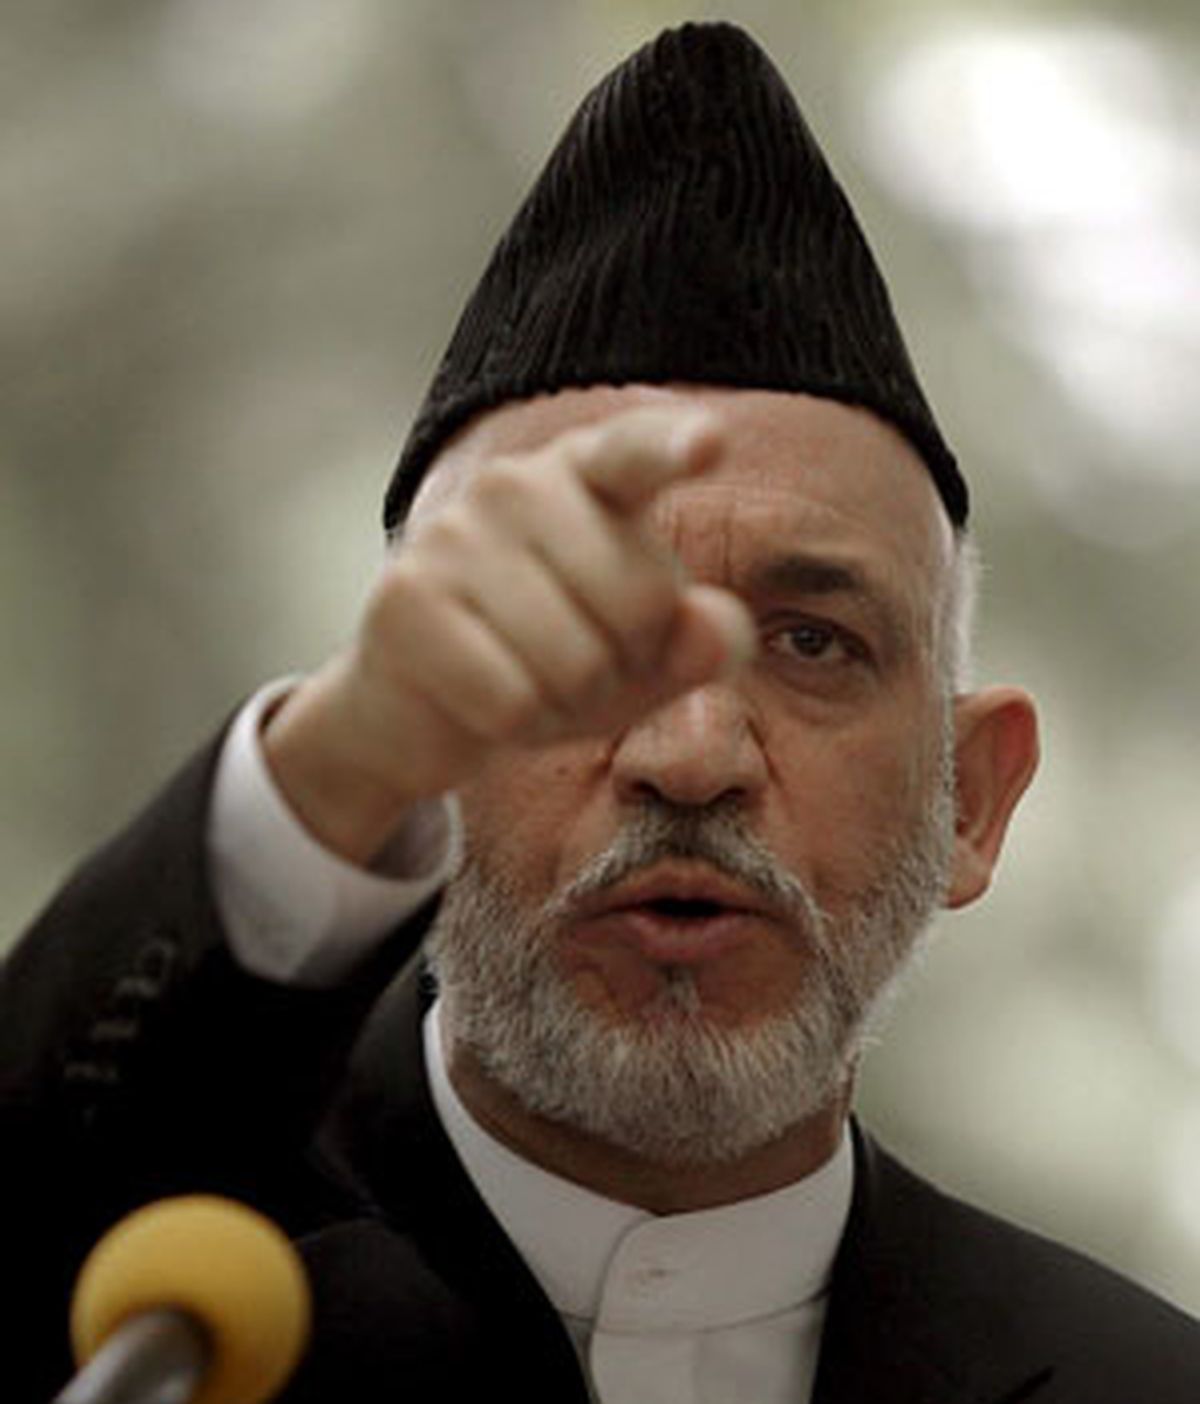 Karzai ha defendido el "derecho" de su país a actuar en defensa propia, advirtió directamente al integrista Baitulah Mehsud de que "iremos por él" y "atacaremos su residencia.